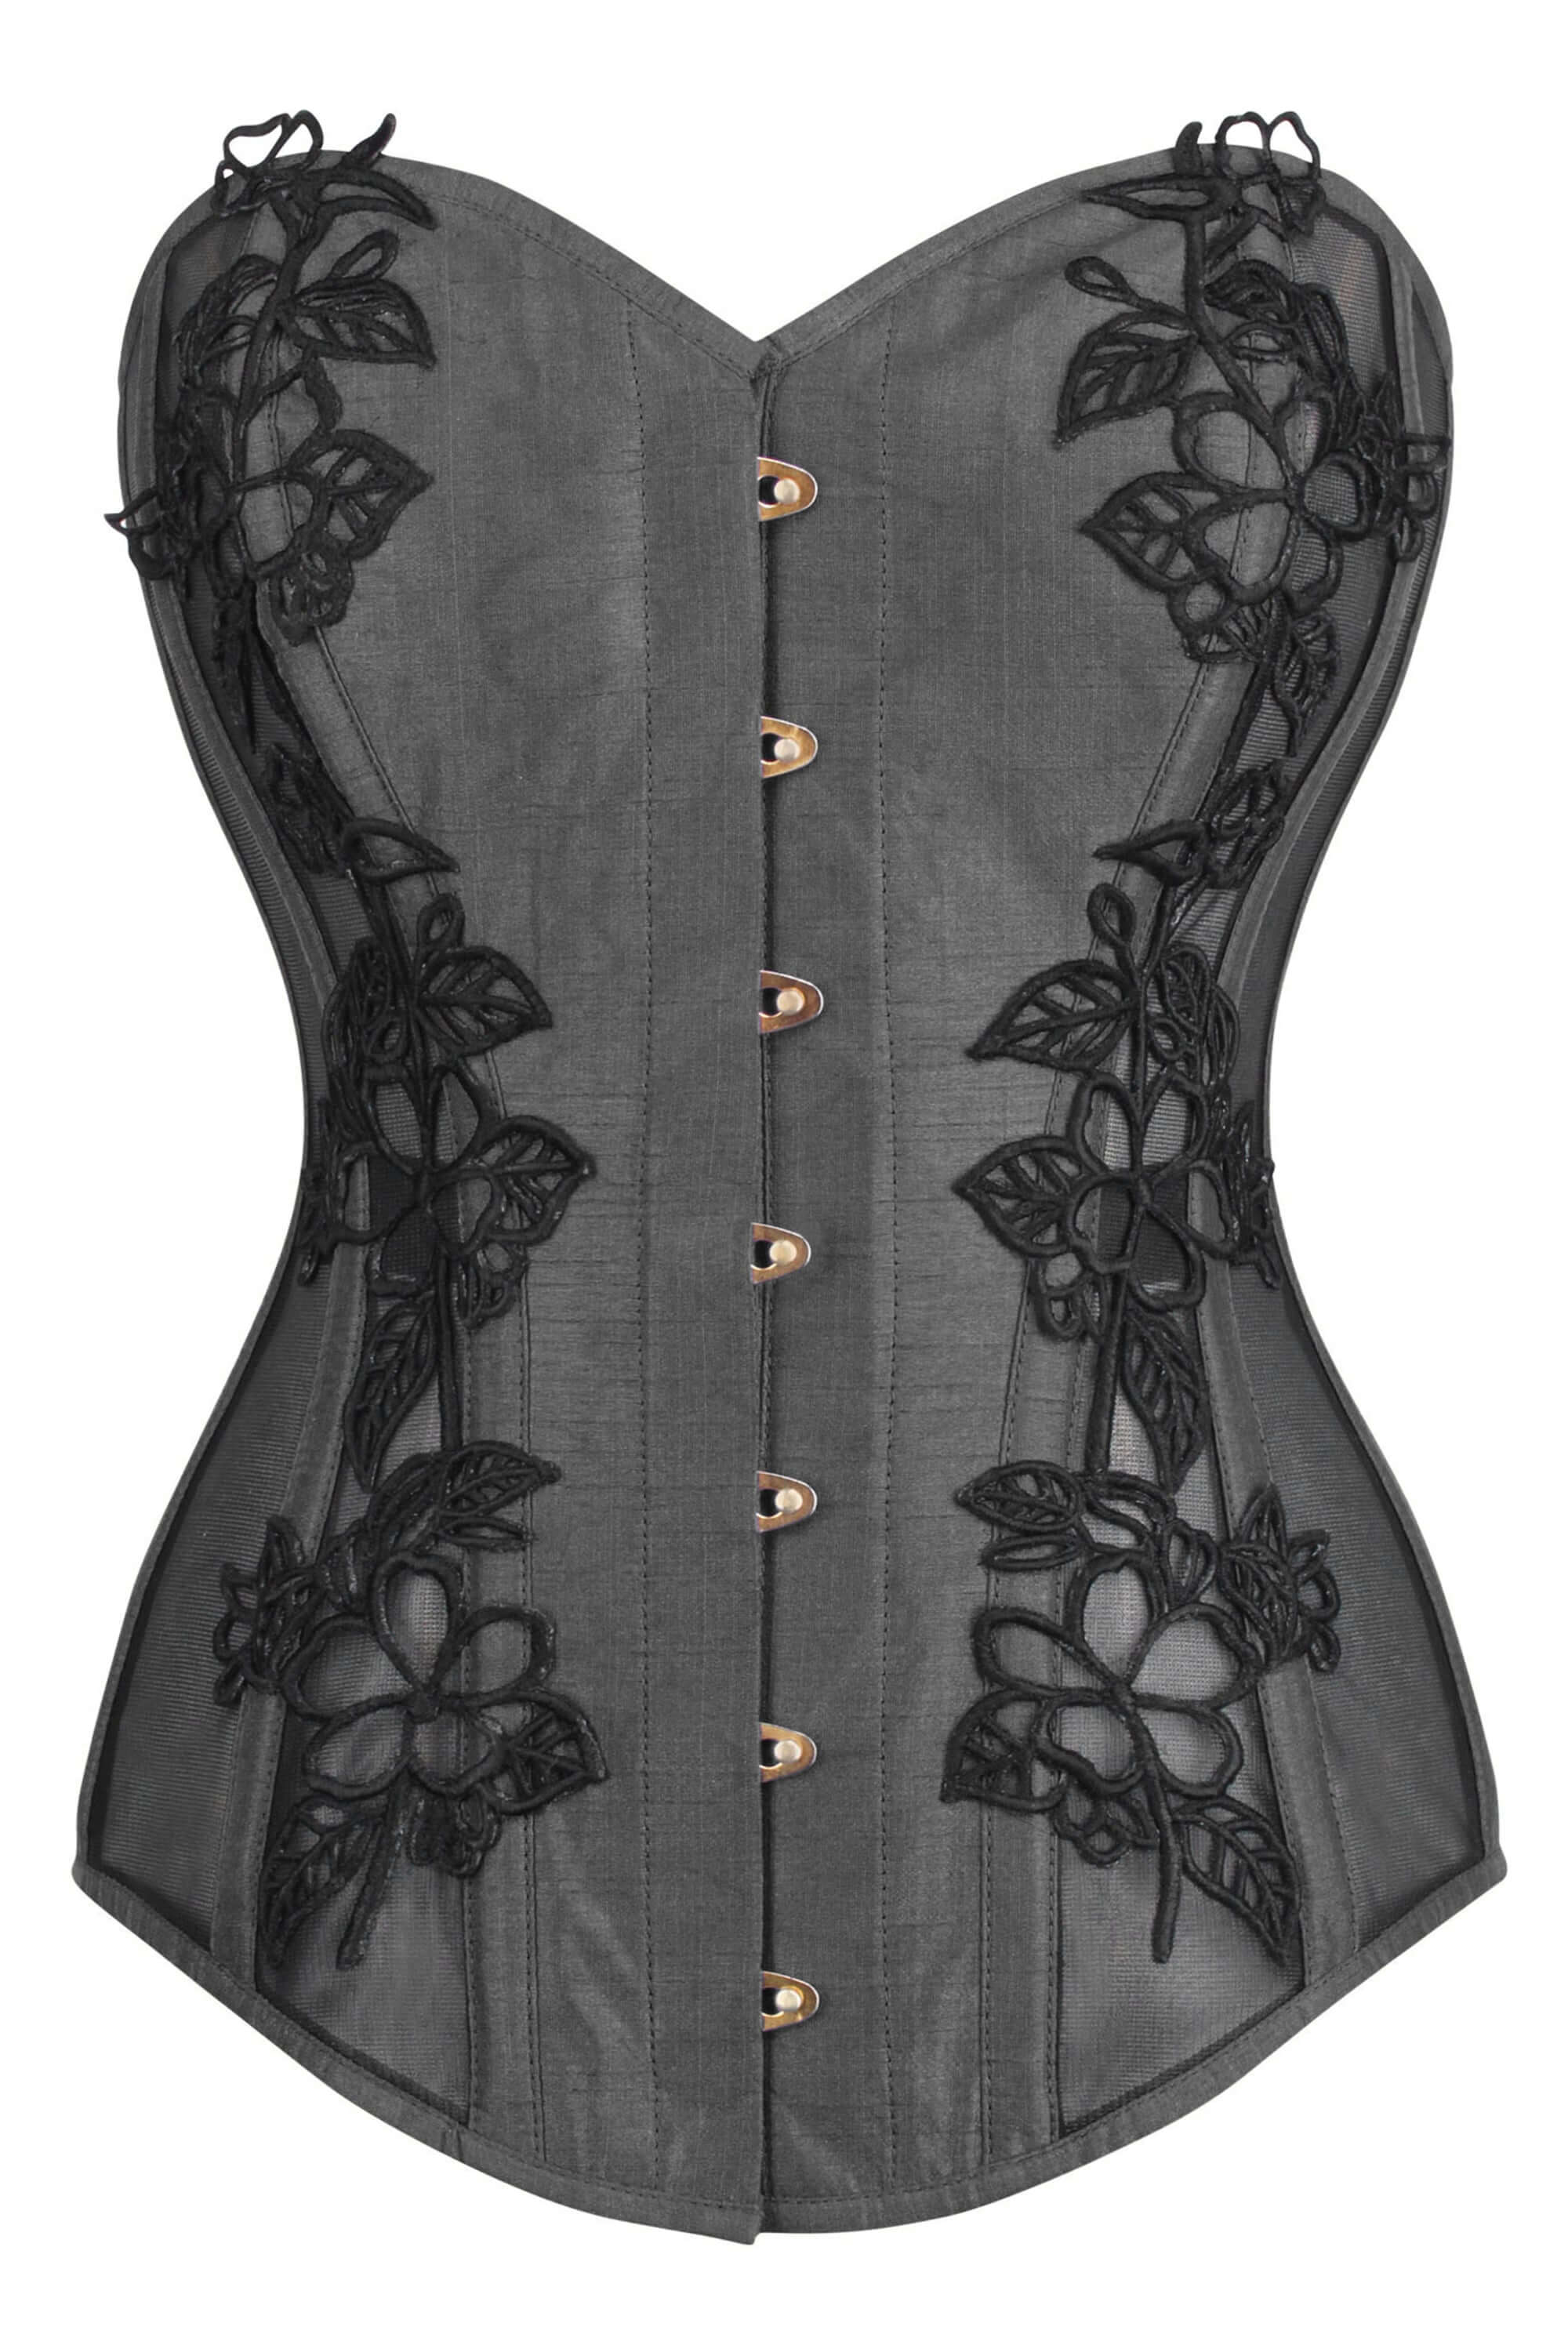 https://corset-story.com/cdn/shop/products/WTS519_2_7c36aac6-8ab8-4aca-95e0-0902dfc92fd6.jpg?v=1672910599